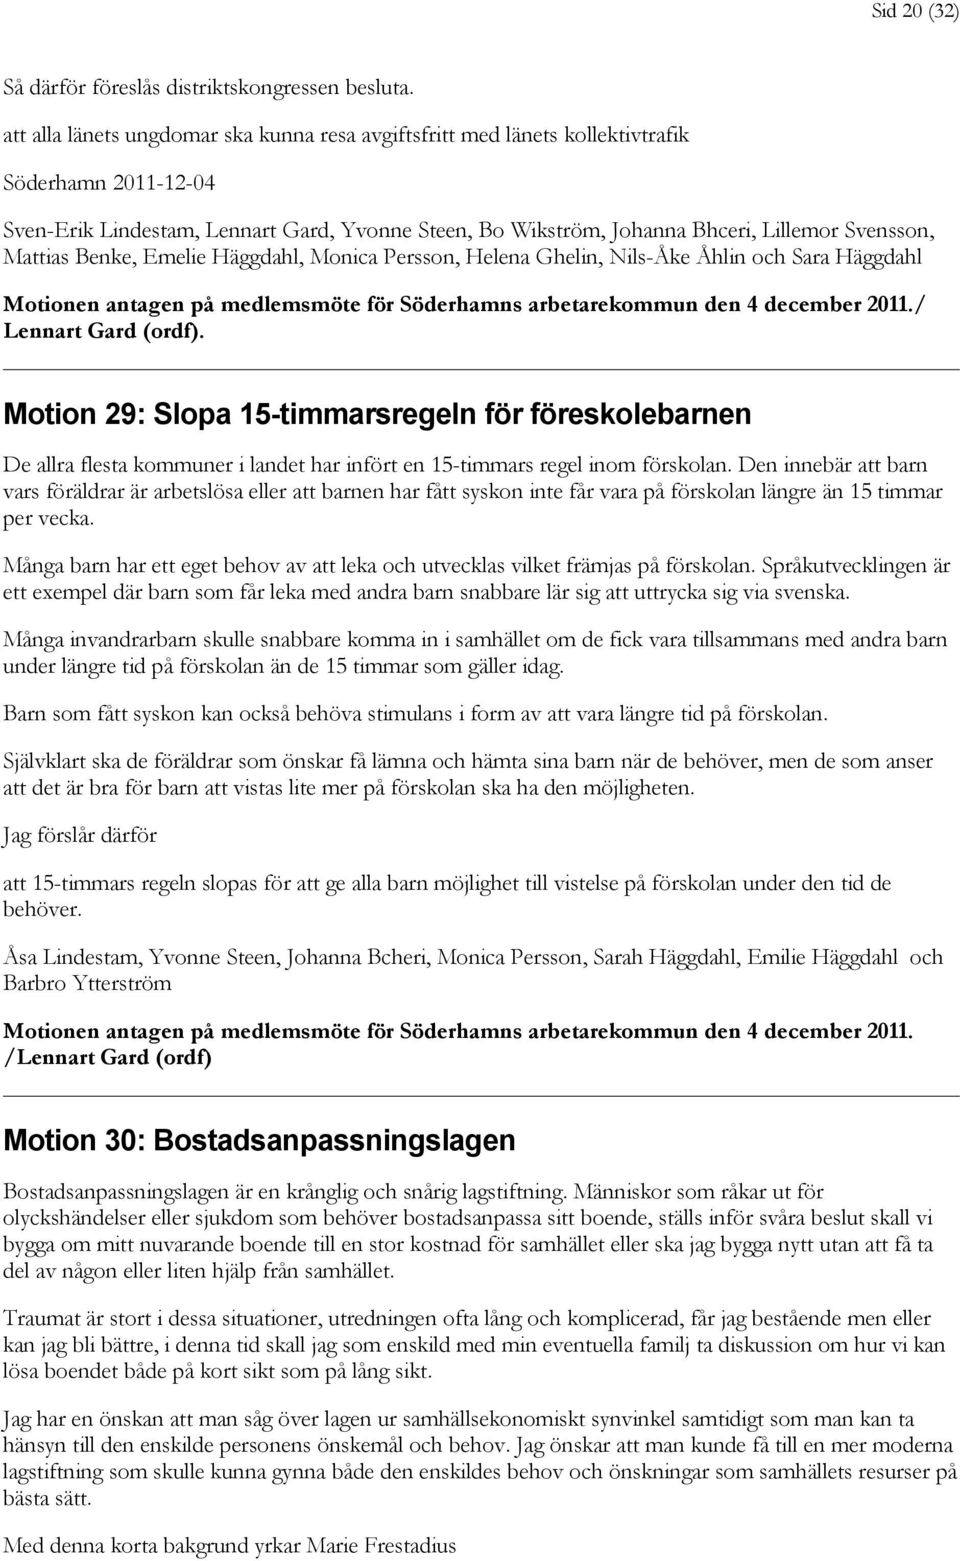 Mattias Benke, Emelie Häggdahl, Monica Persson, Helena Ghelin, Nils-Åke Åhlin och Sara Häggdahl Motionen antagen på medlemsmöte för Söderhamns arbetarekommun den 4 december 2011./ Lennart Gard (ordf).